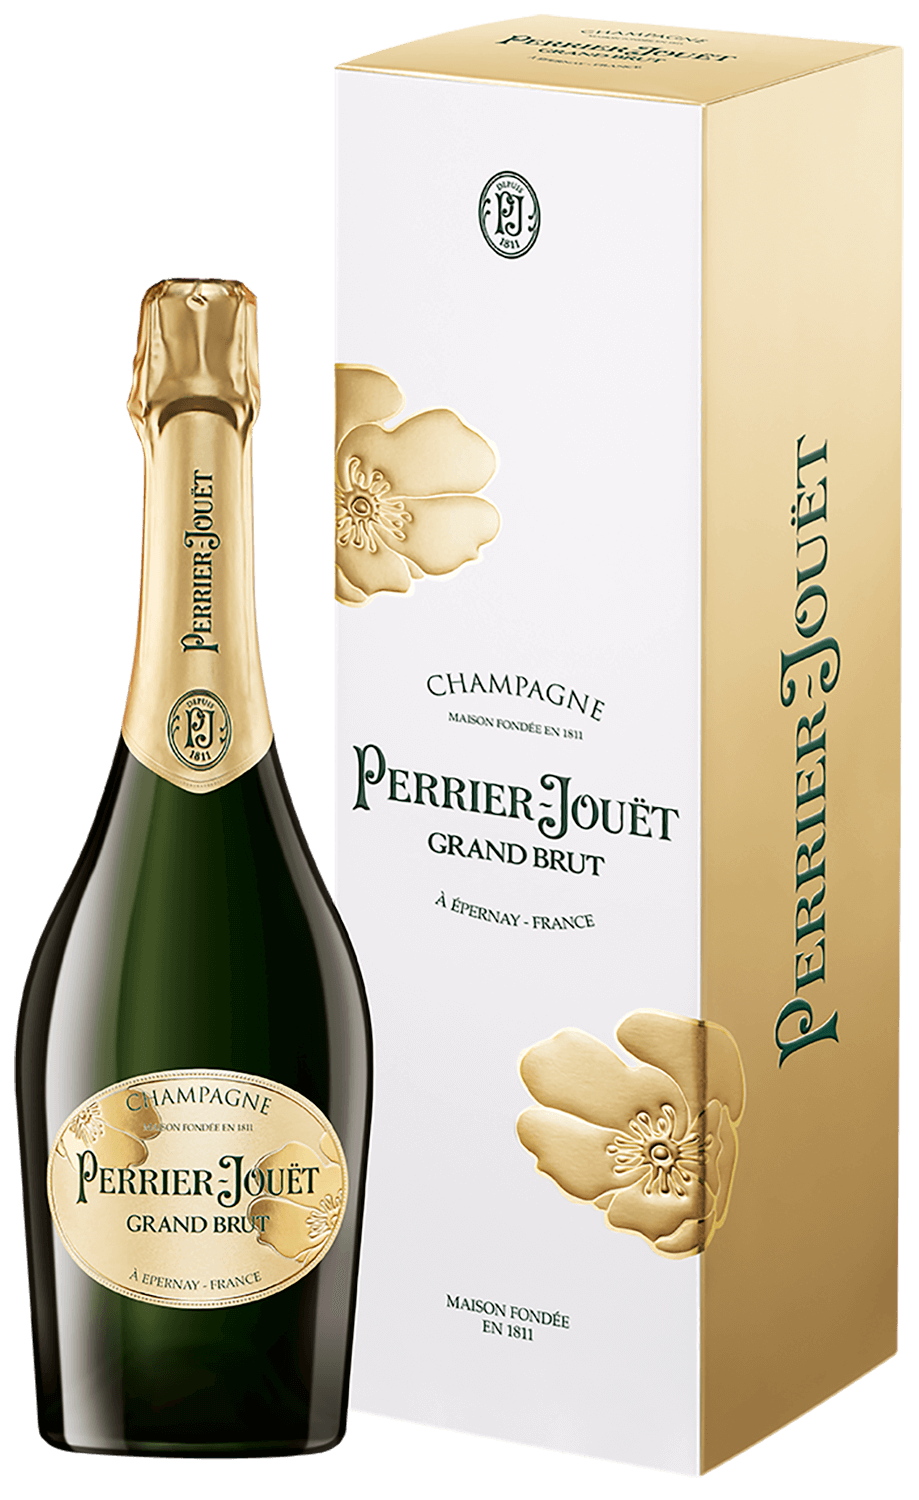 Perrier-Jouёt Grand Brut Champagne AOC (gift box) perrier jouet belle epoque blanc de blancs 2012 champagne aoc brut gift box